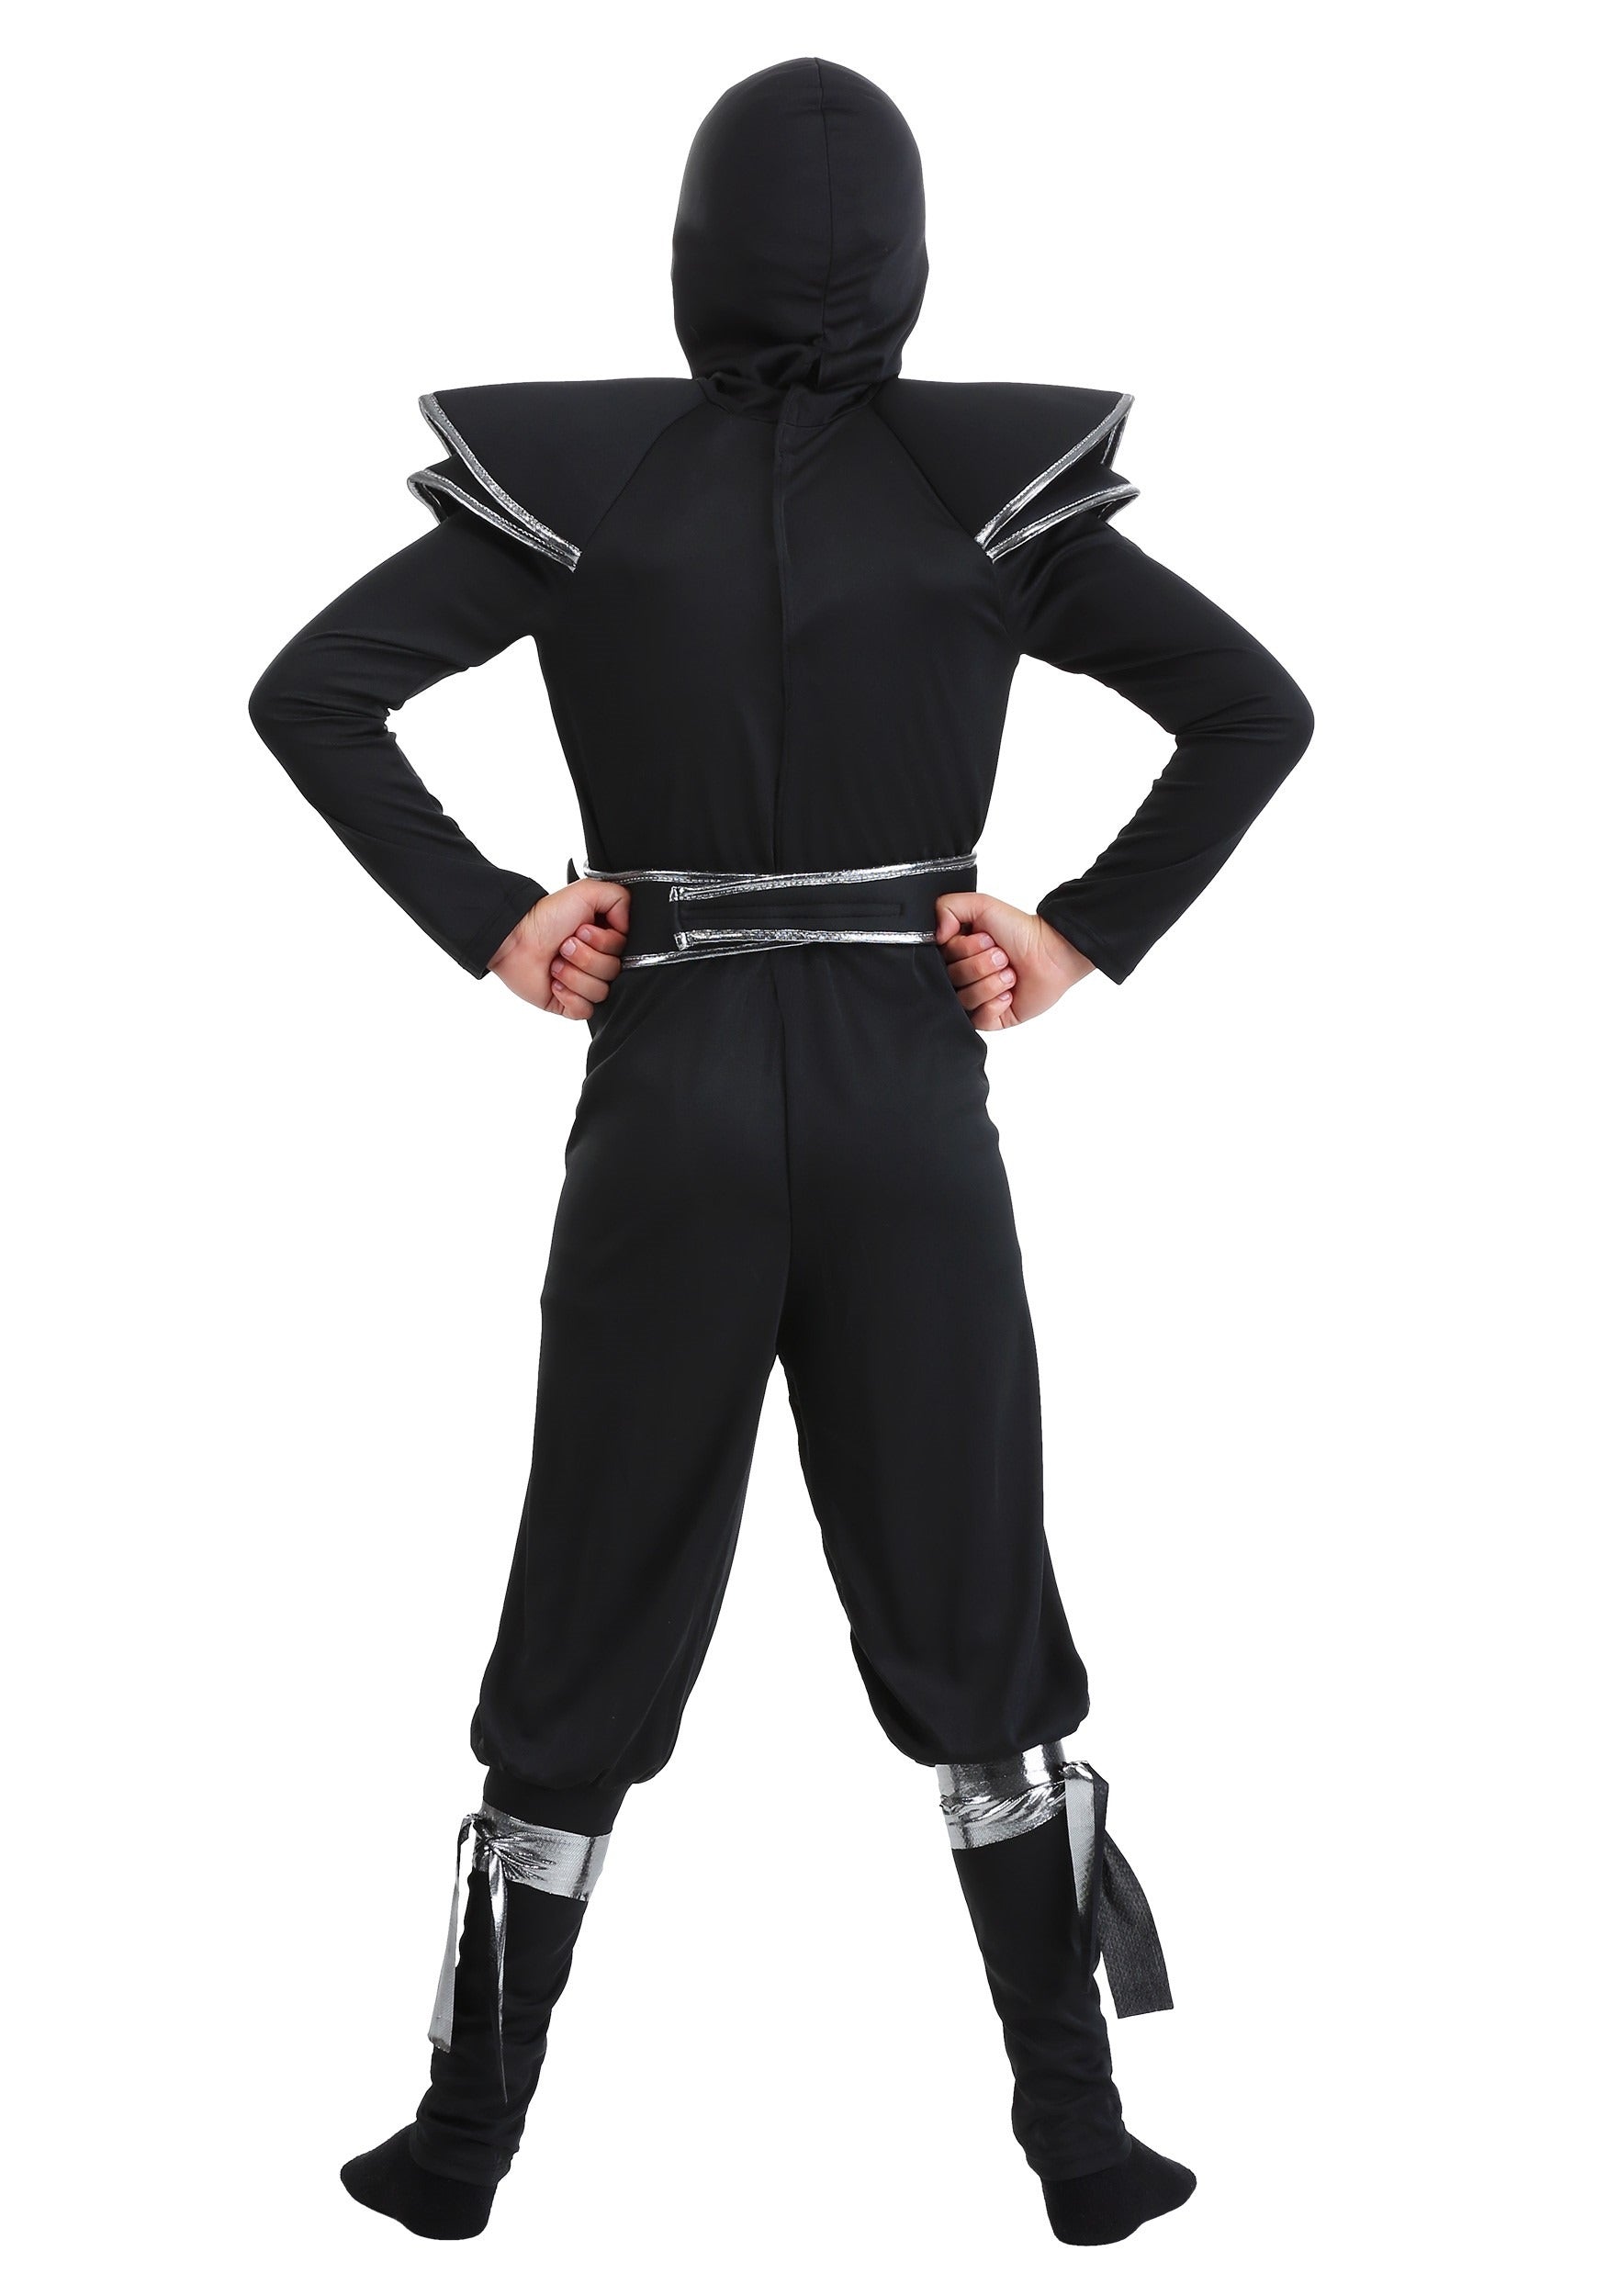 Ninja Warrior Children's Costume